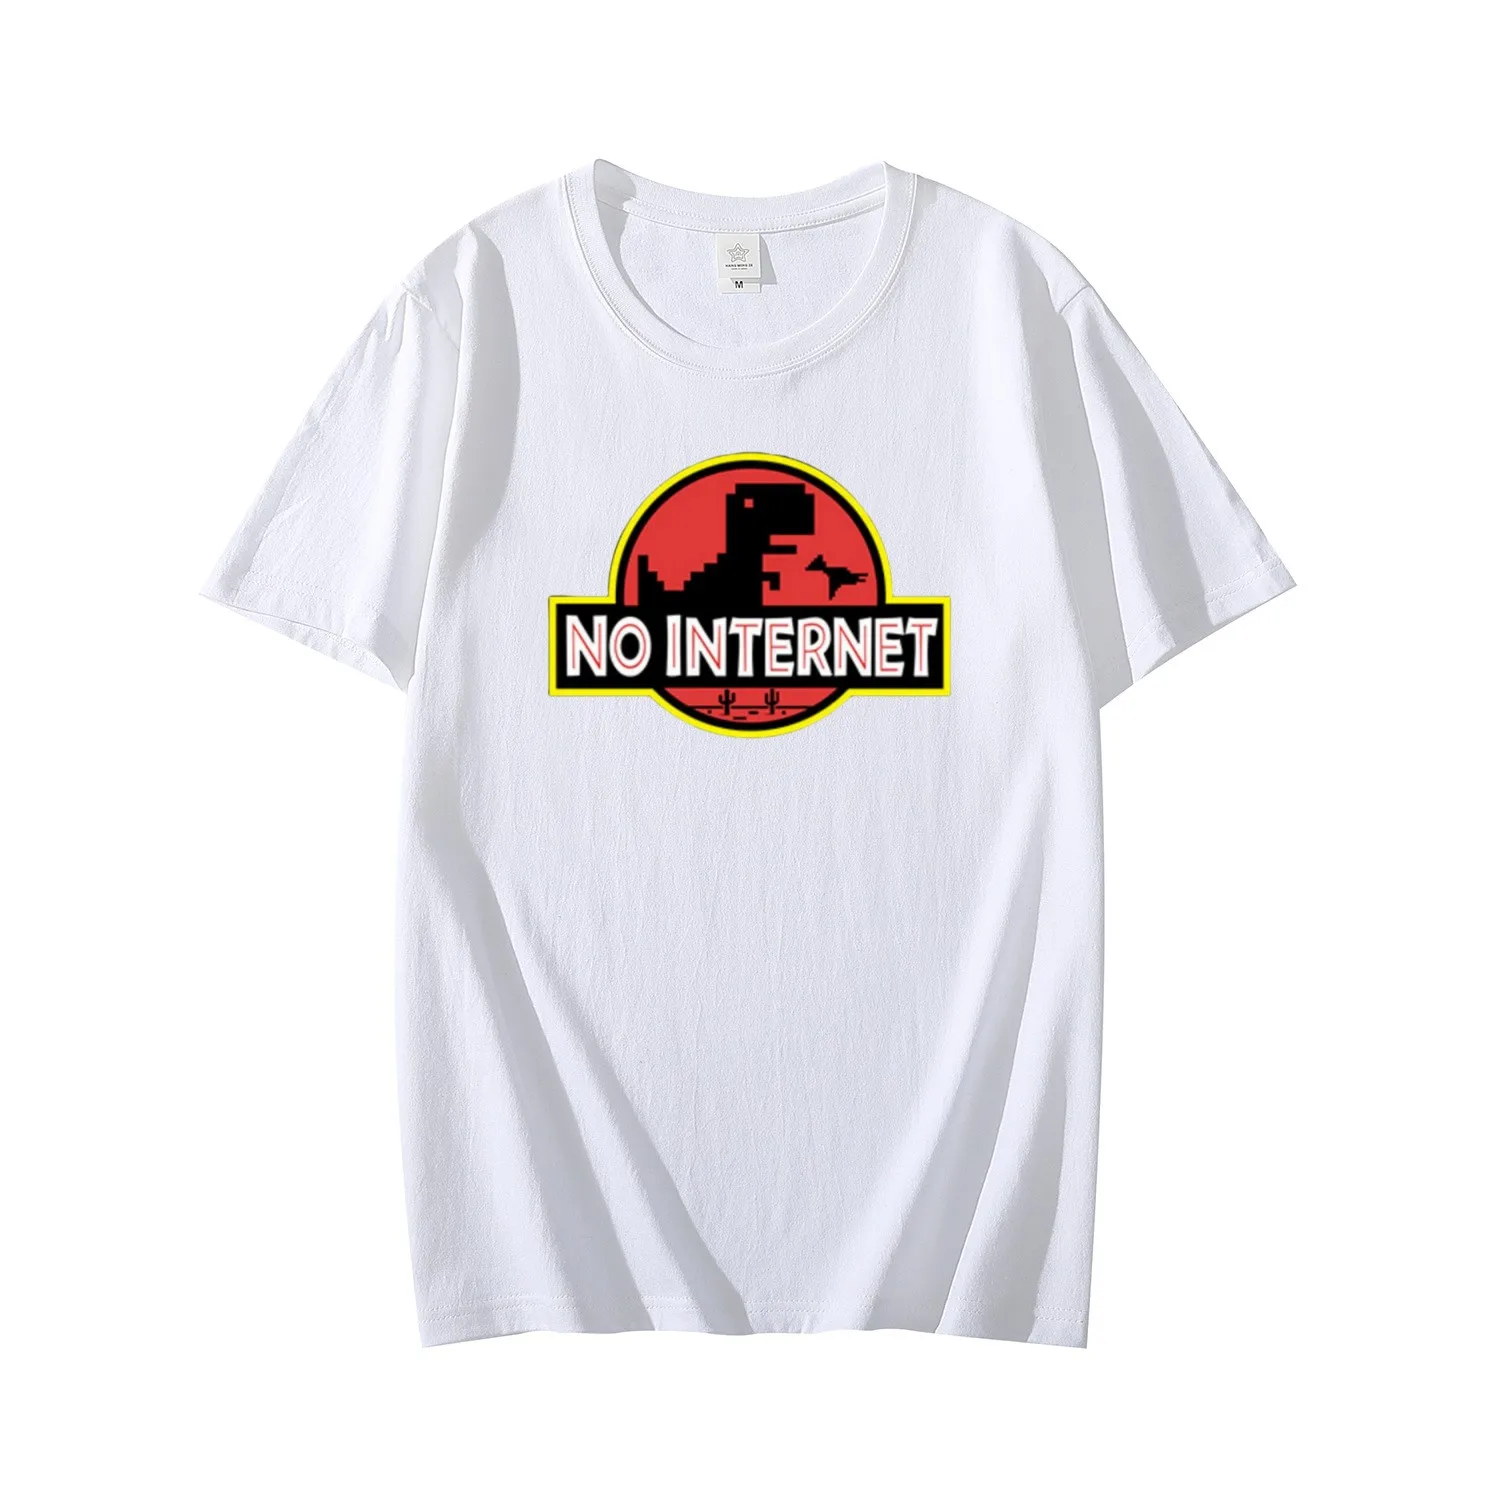 

Футболка с мультипликационным динозавром, Мужская футболка с принтом динозавра, Забавный Повседневный Топ в стиле Харадзюку, футболка для автономного парка Юрского периода, повседневный мужской топ